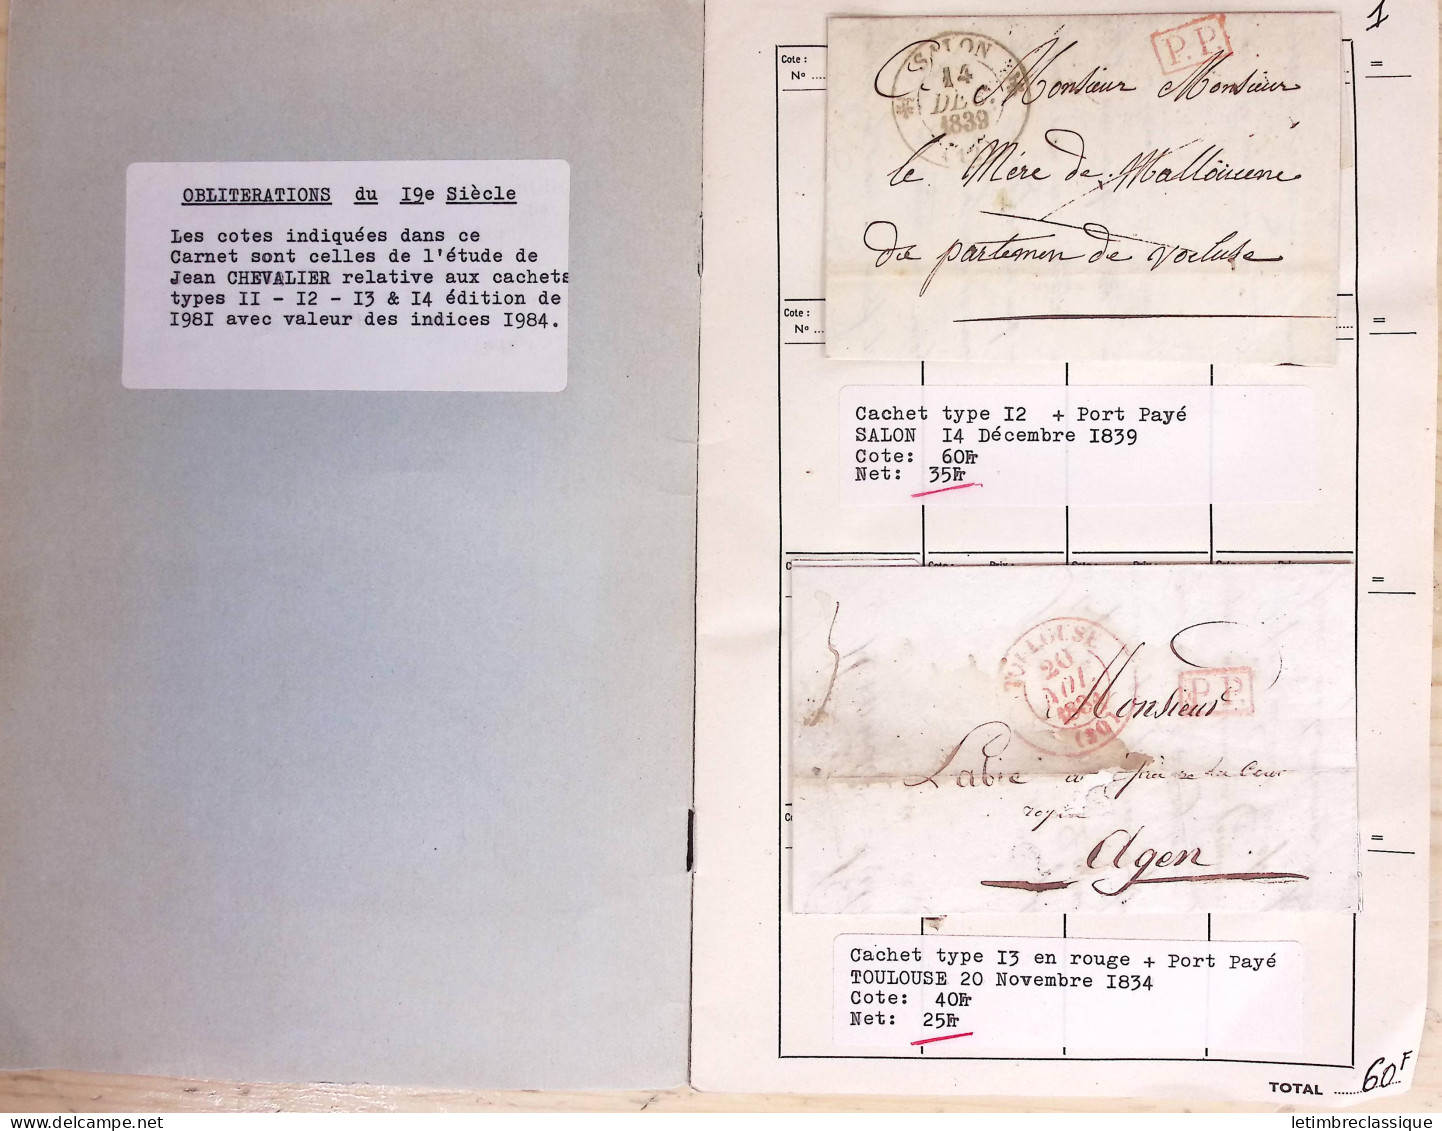 Lettre Ensemble d'env. et sachets de l'Union Marcophile contenant des marques postales et lettres classiques de la Haute